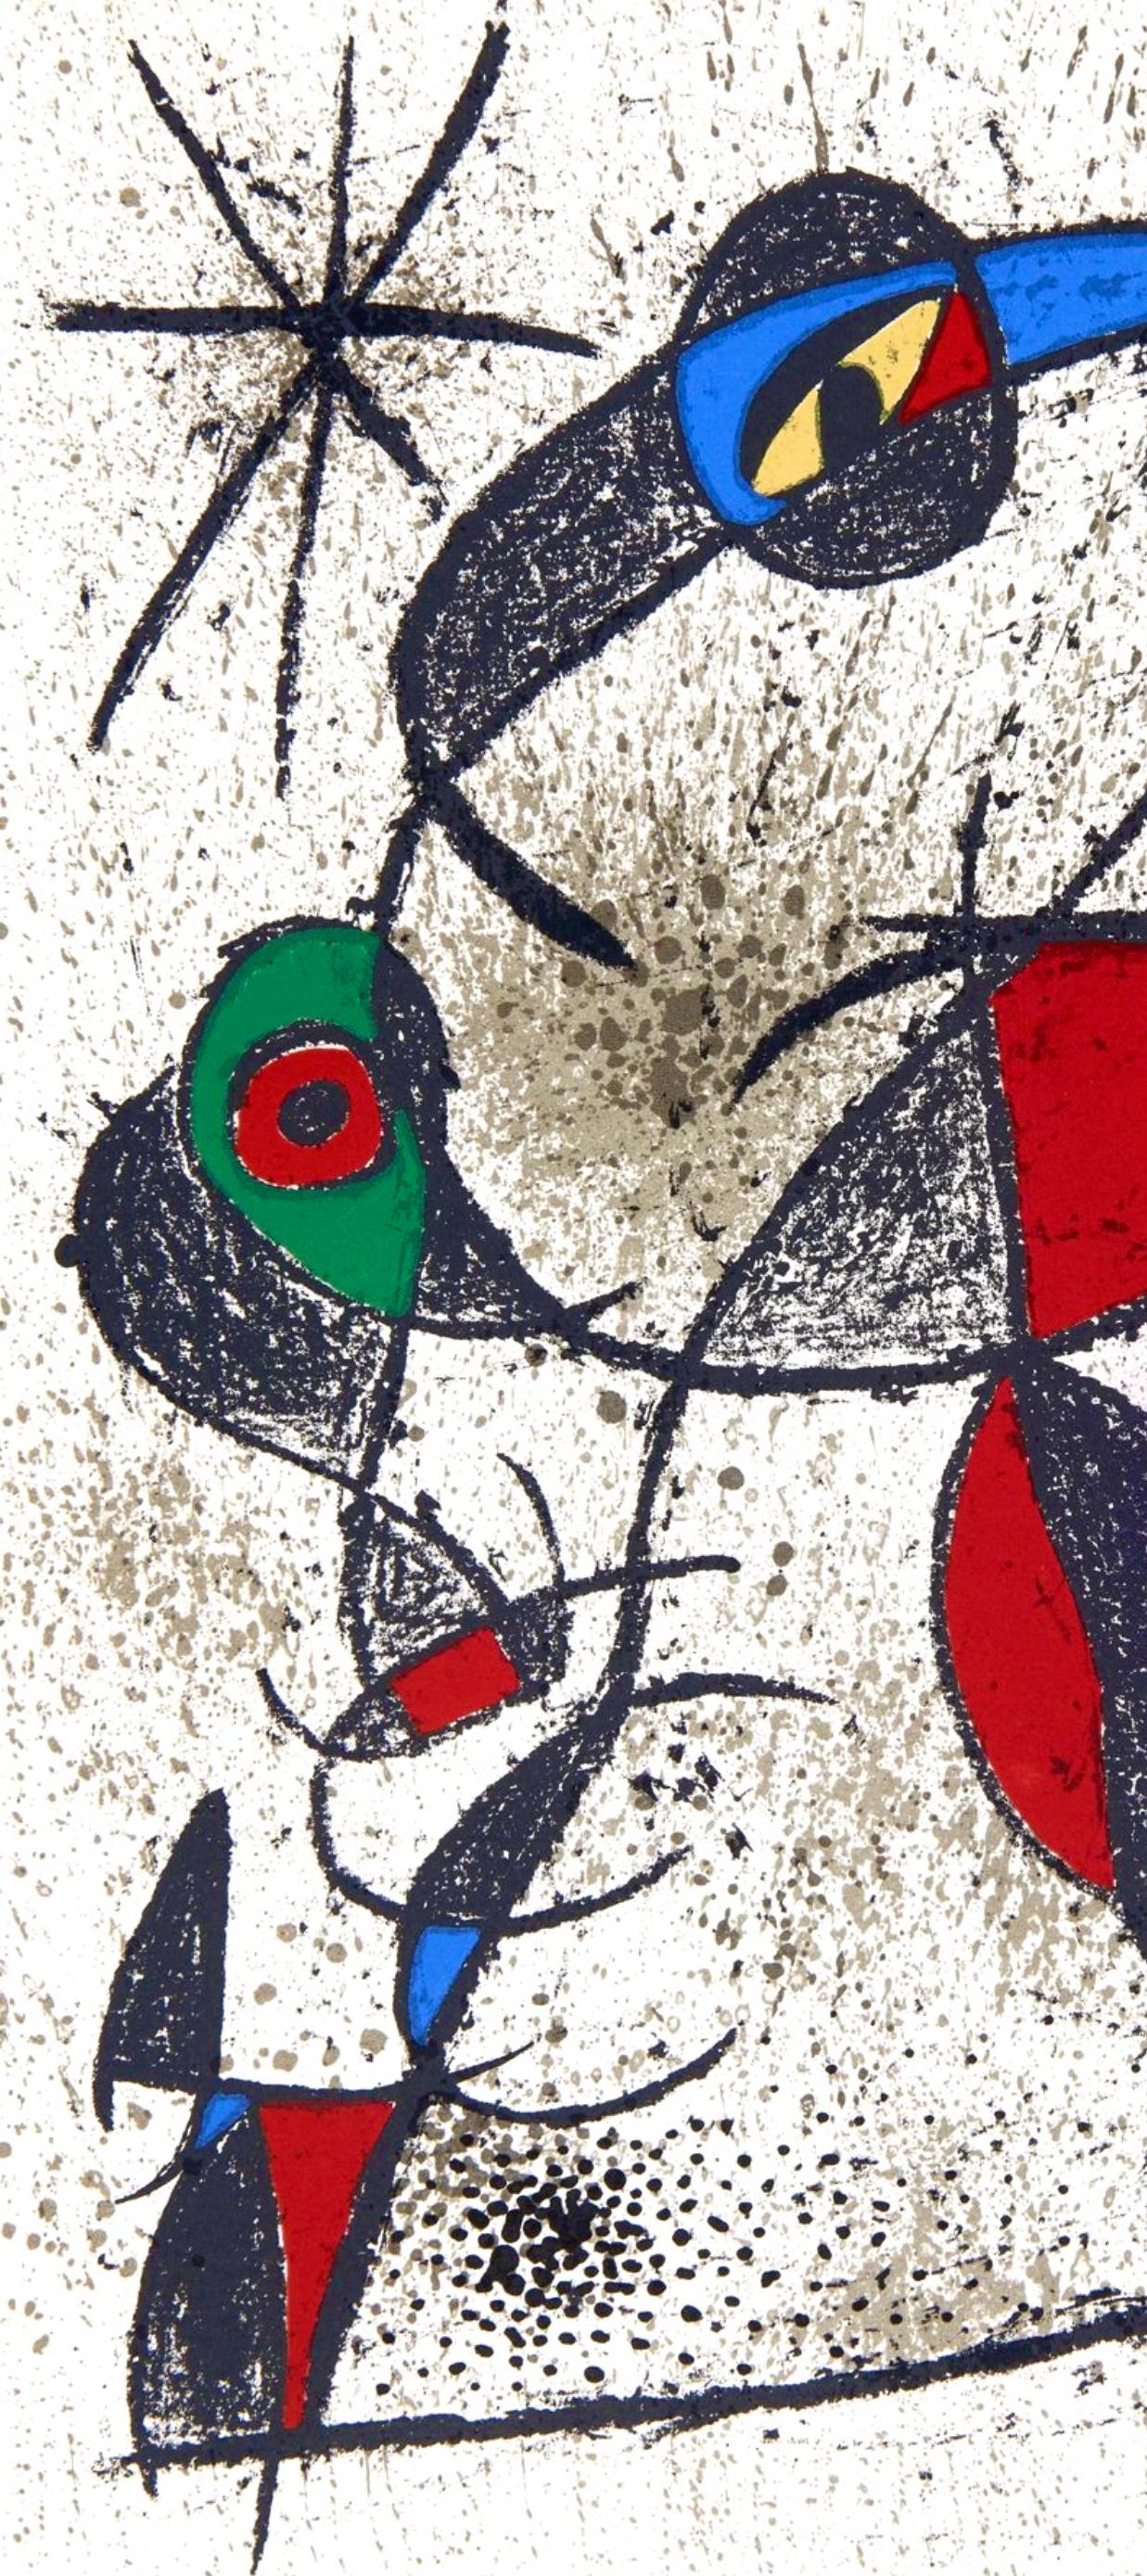 Miró, Faillie du calcaire, Souvenirs et portraits d'artistes (dopo) - Print di Joan Miró